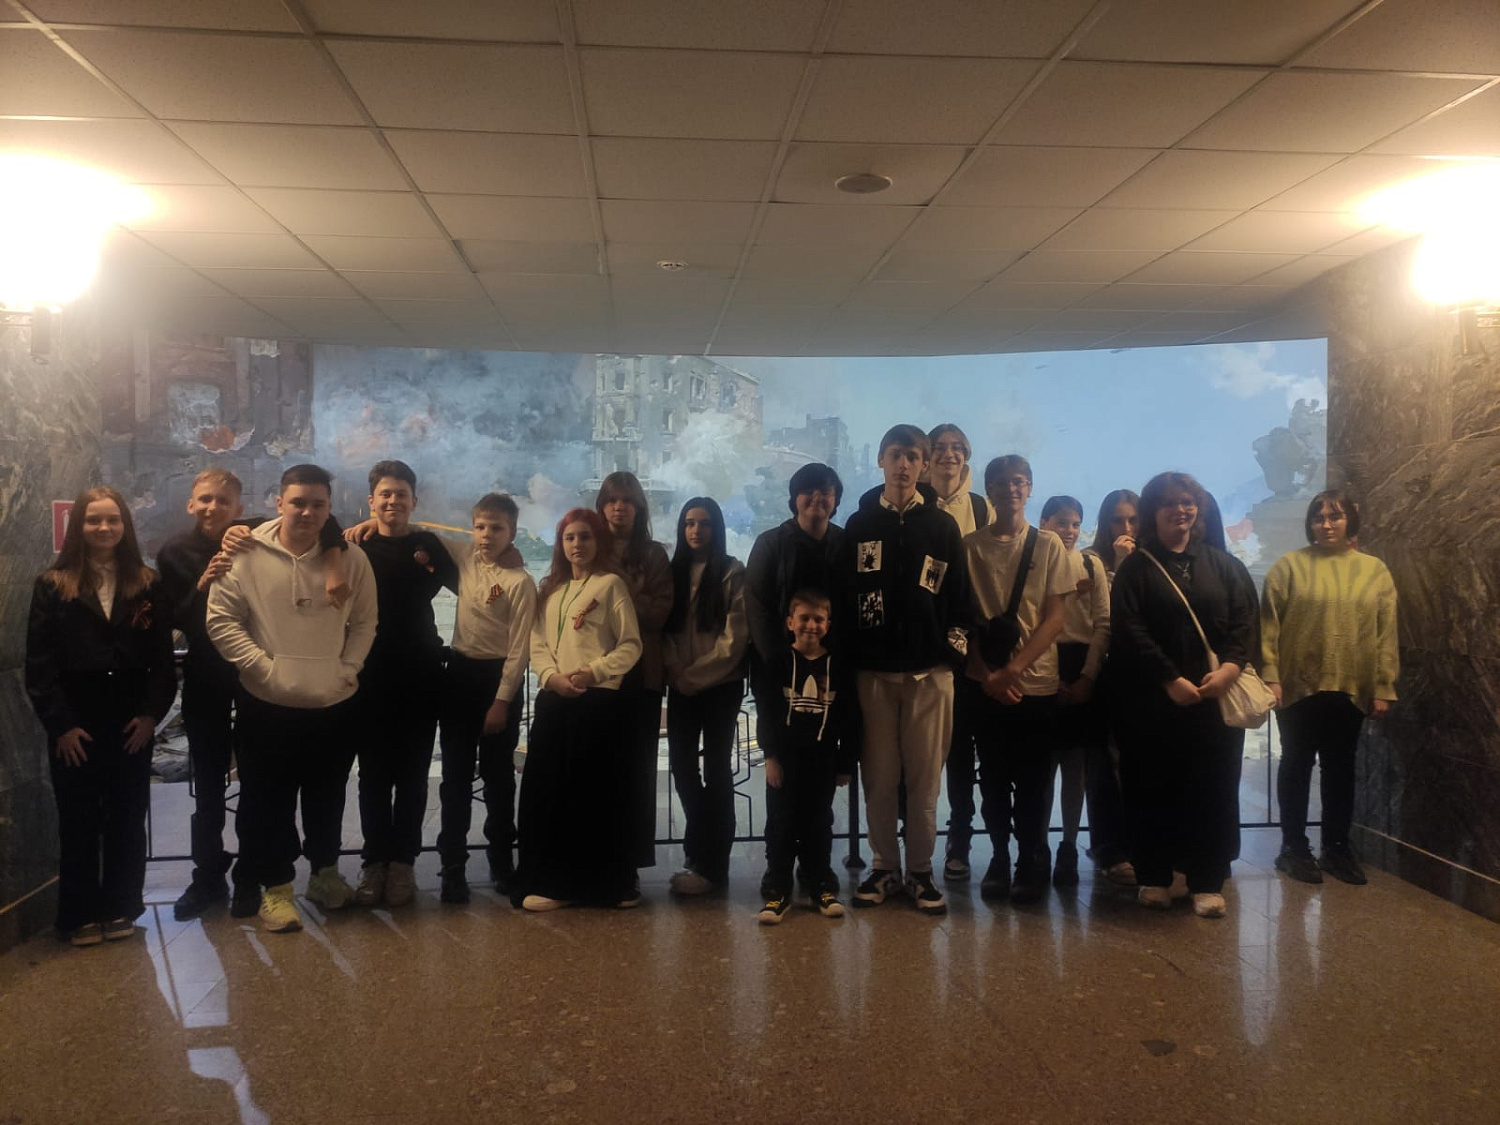 Ученики нашей школы посетили Государственный музей Г.К. Жукова